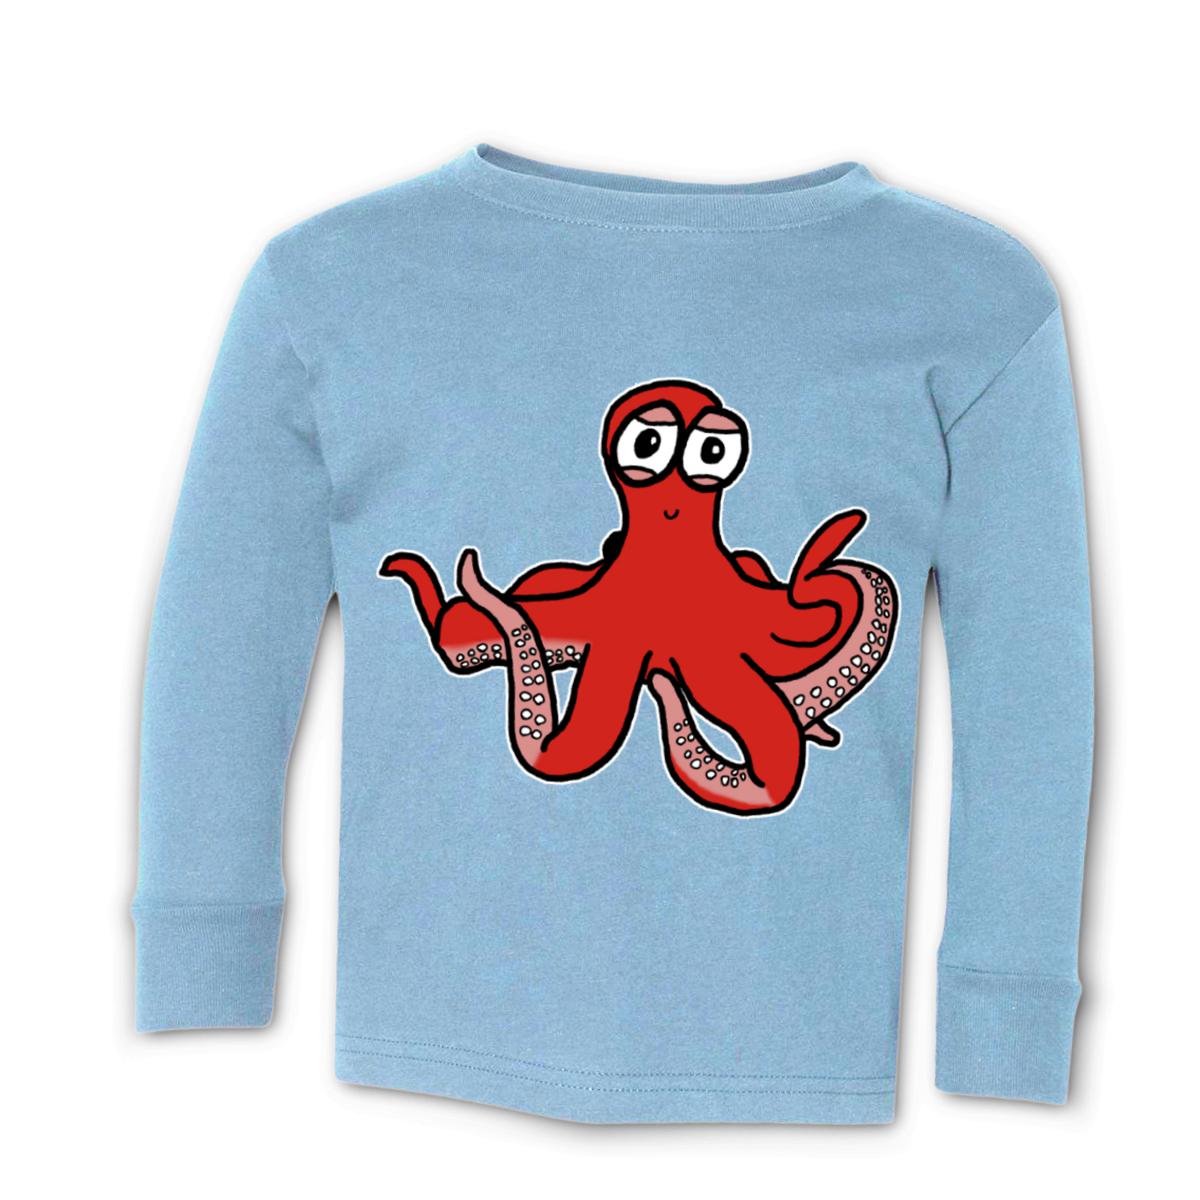 Octopus Toddler Long Sleeve Tee 4T light-blue